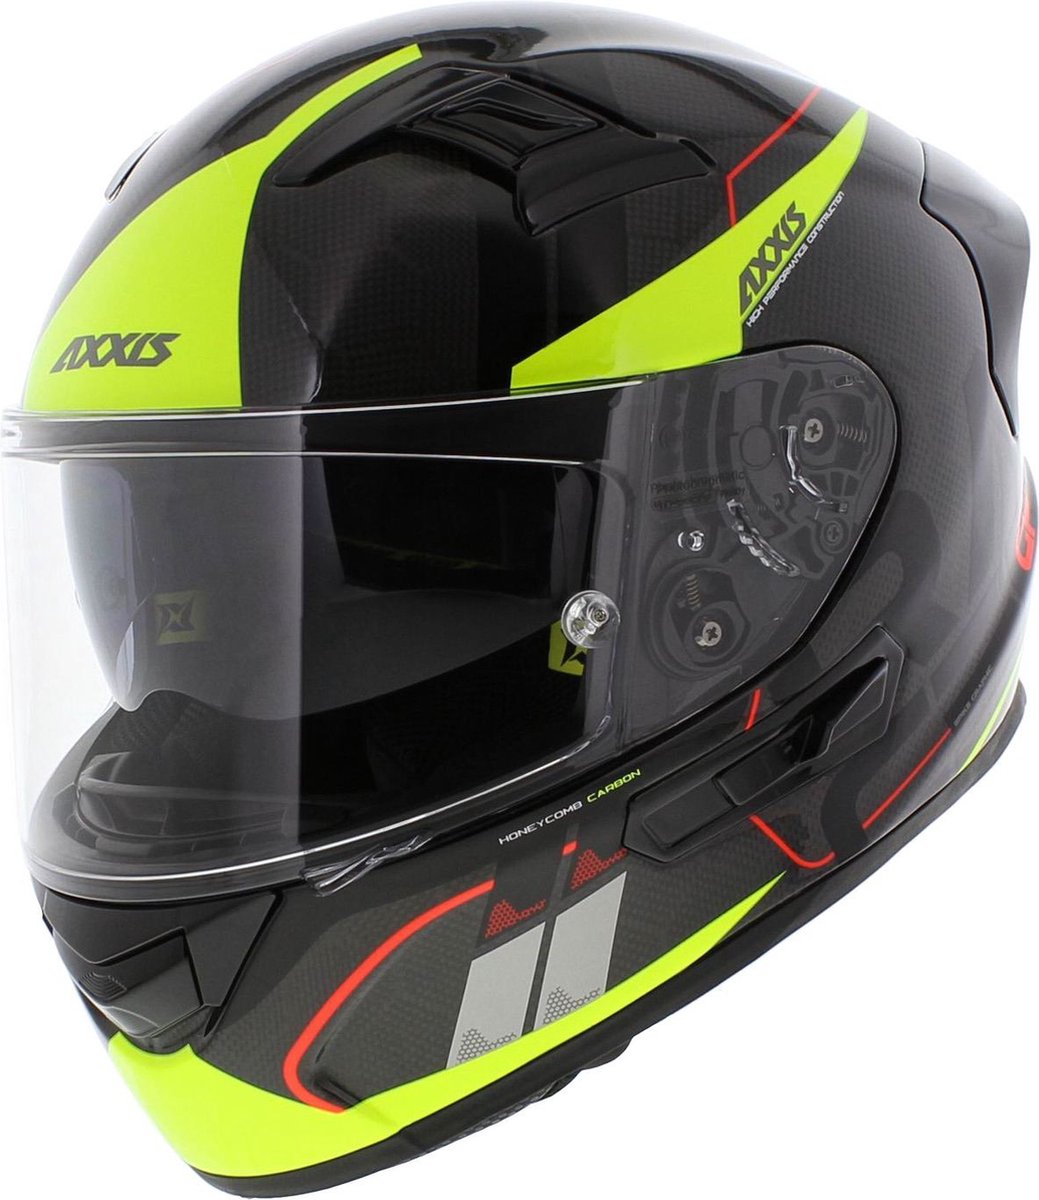 Axxis Racer GP Carbon SV integraal helm Spike glans zwart fluor geel S